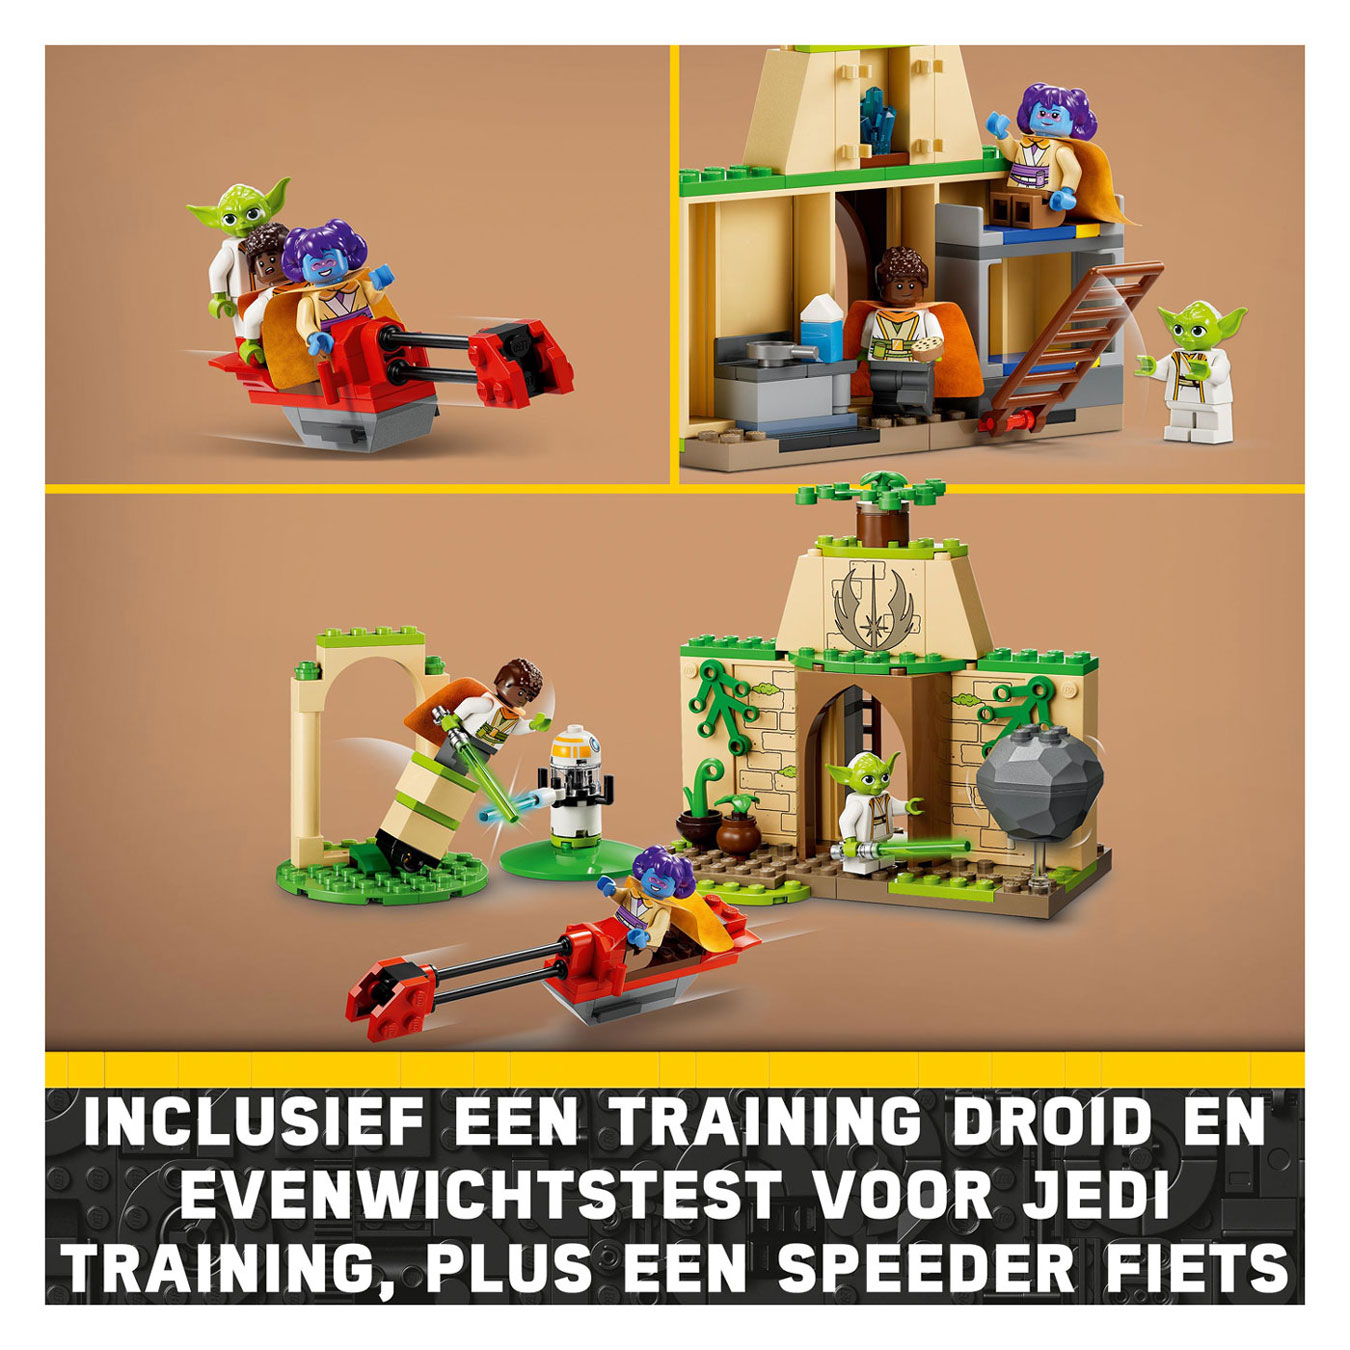 LEGO Star Wars 75358 Tenoo Jedi Tempel